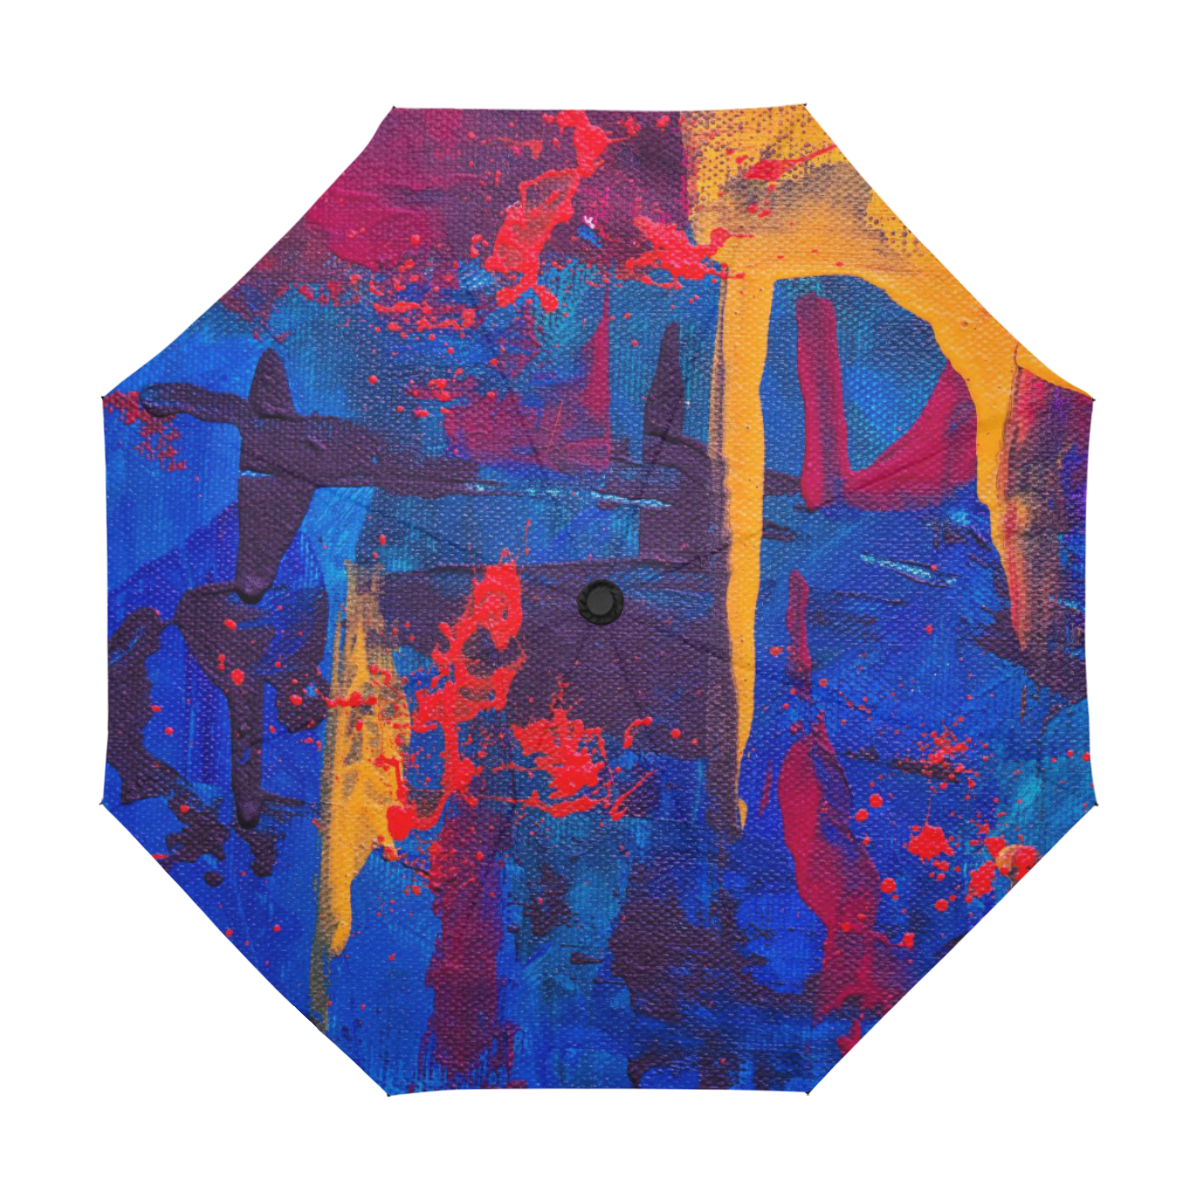 oil_l Anti-UV Auto-Foldable Umbrella (U09)